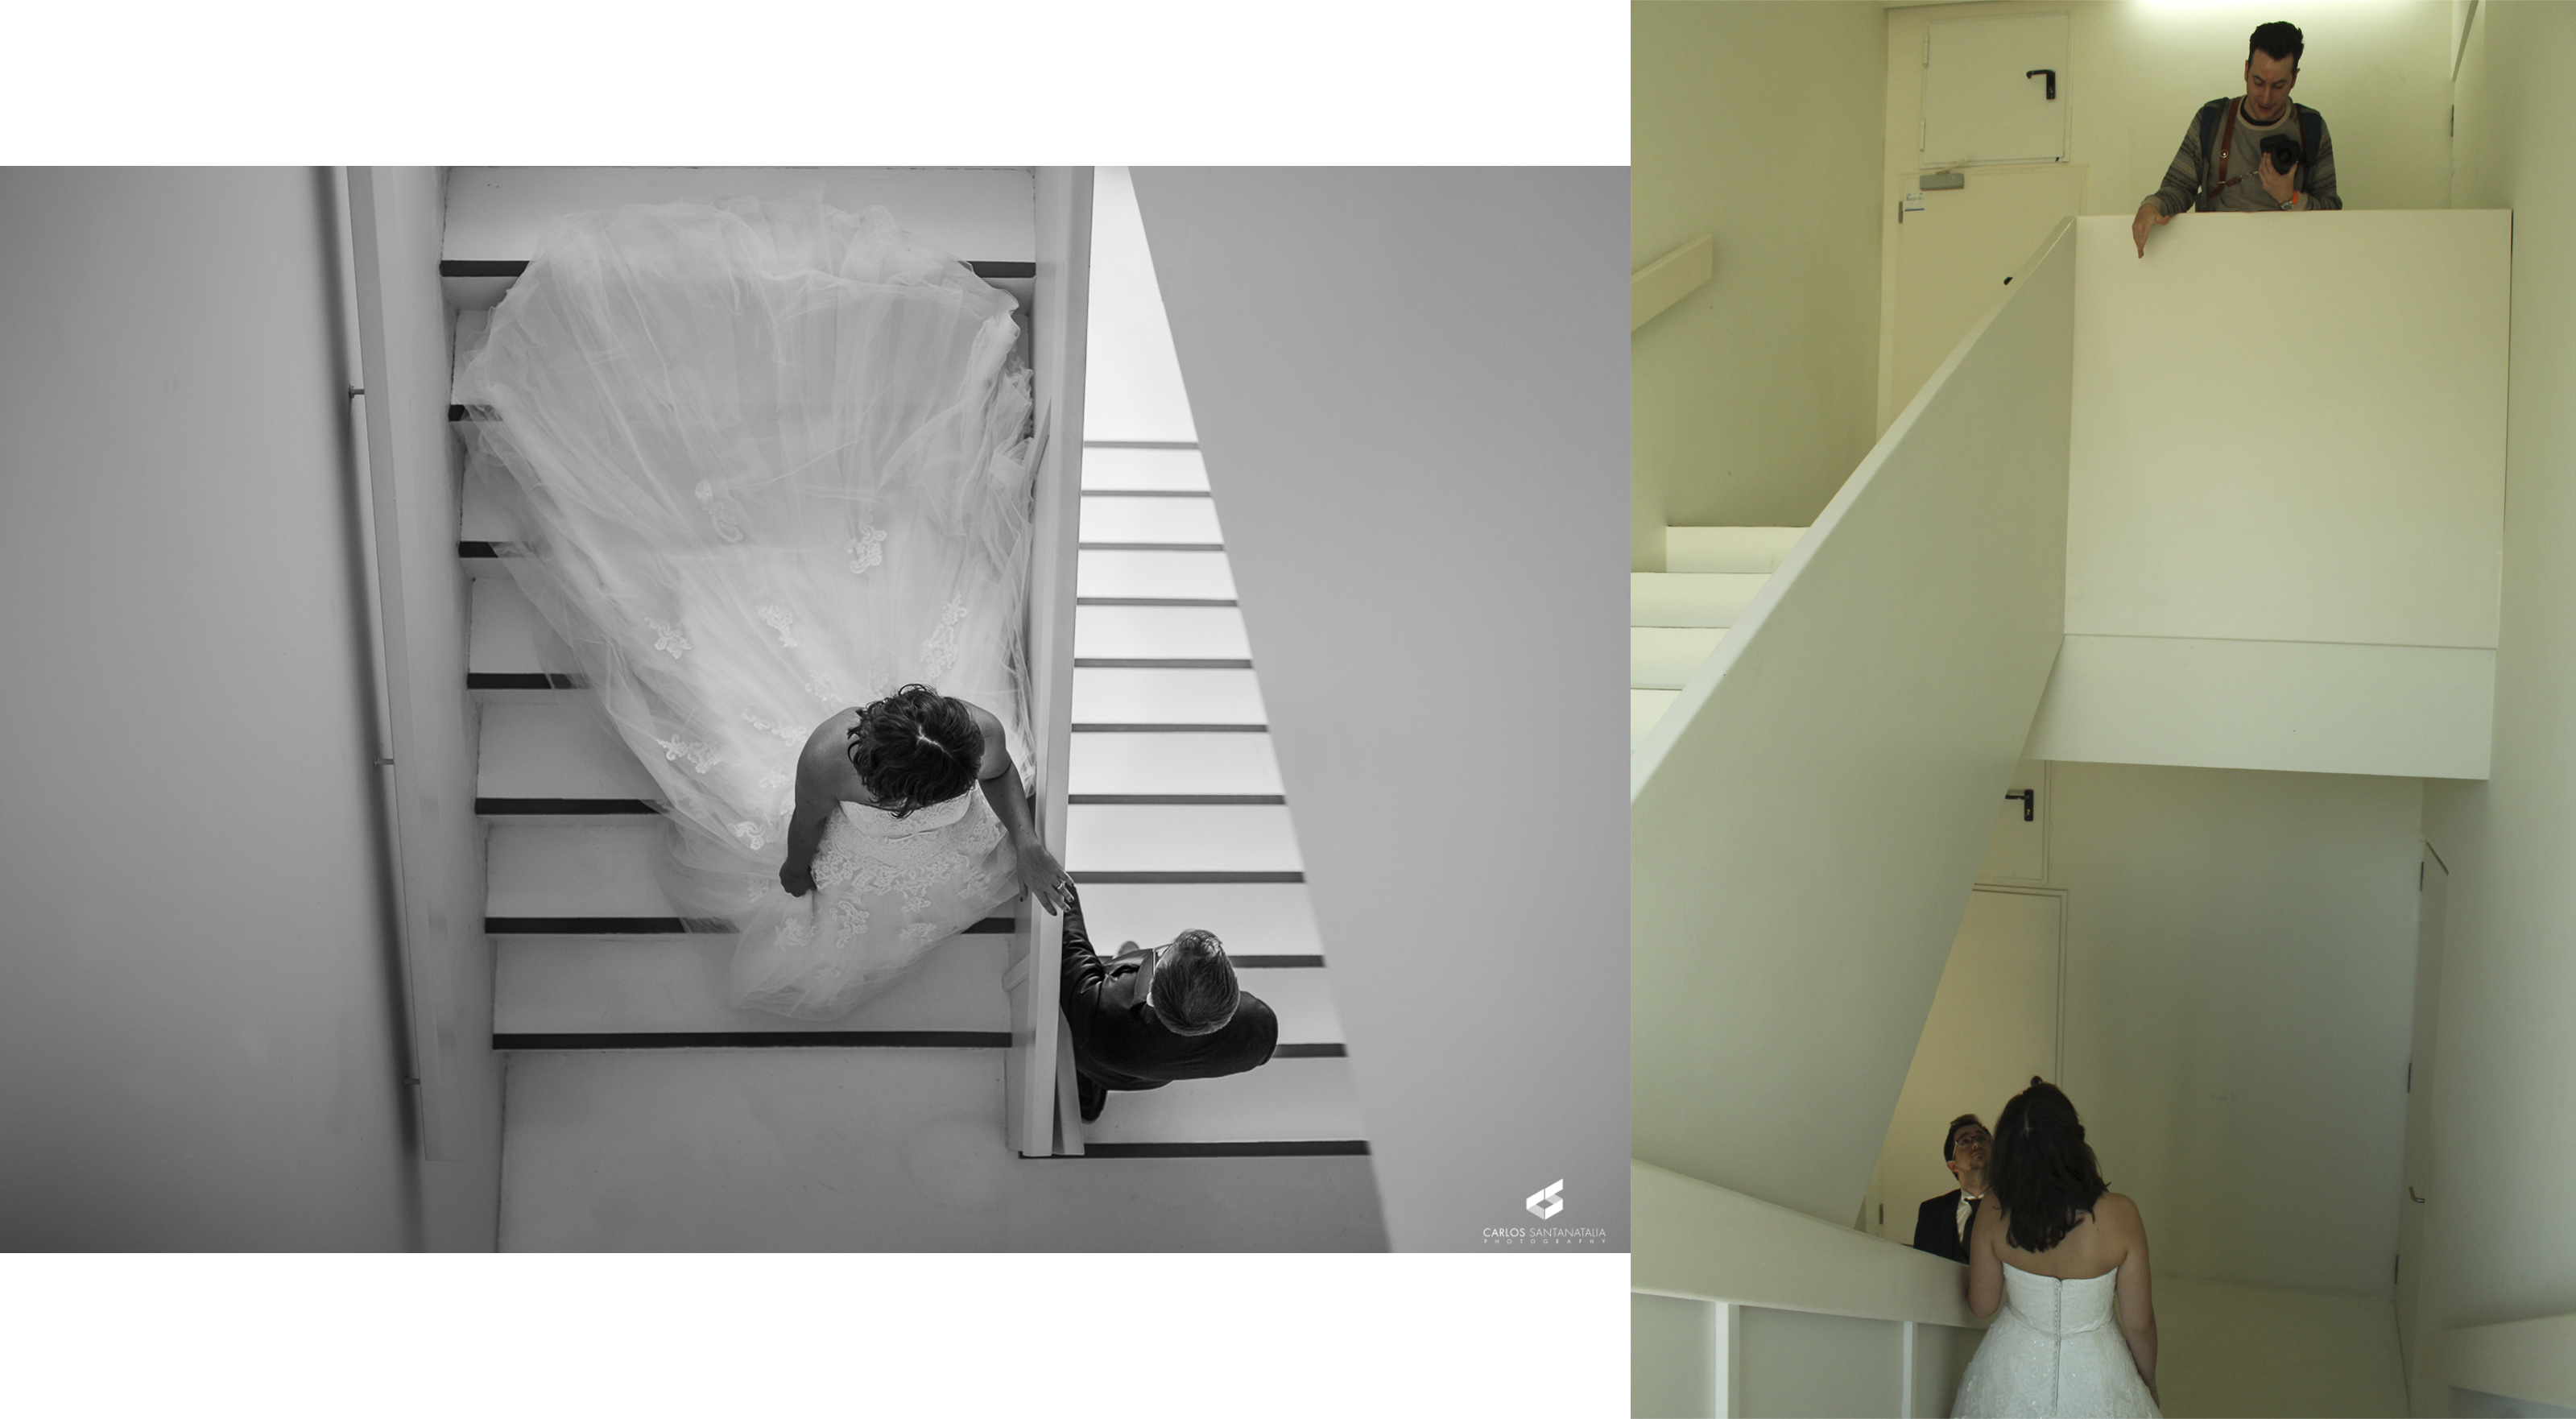 Combinación de fotografías. A la izquierda realizada por Carlos Santanatalia y a la derecha muestra cómo se hizo